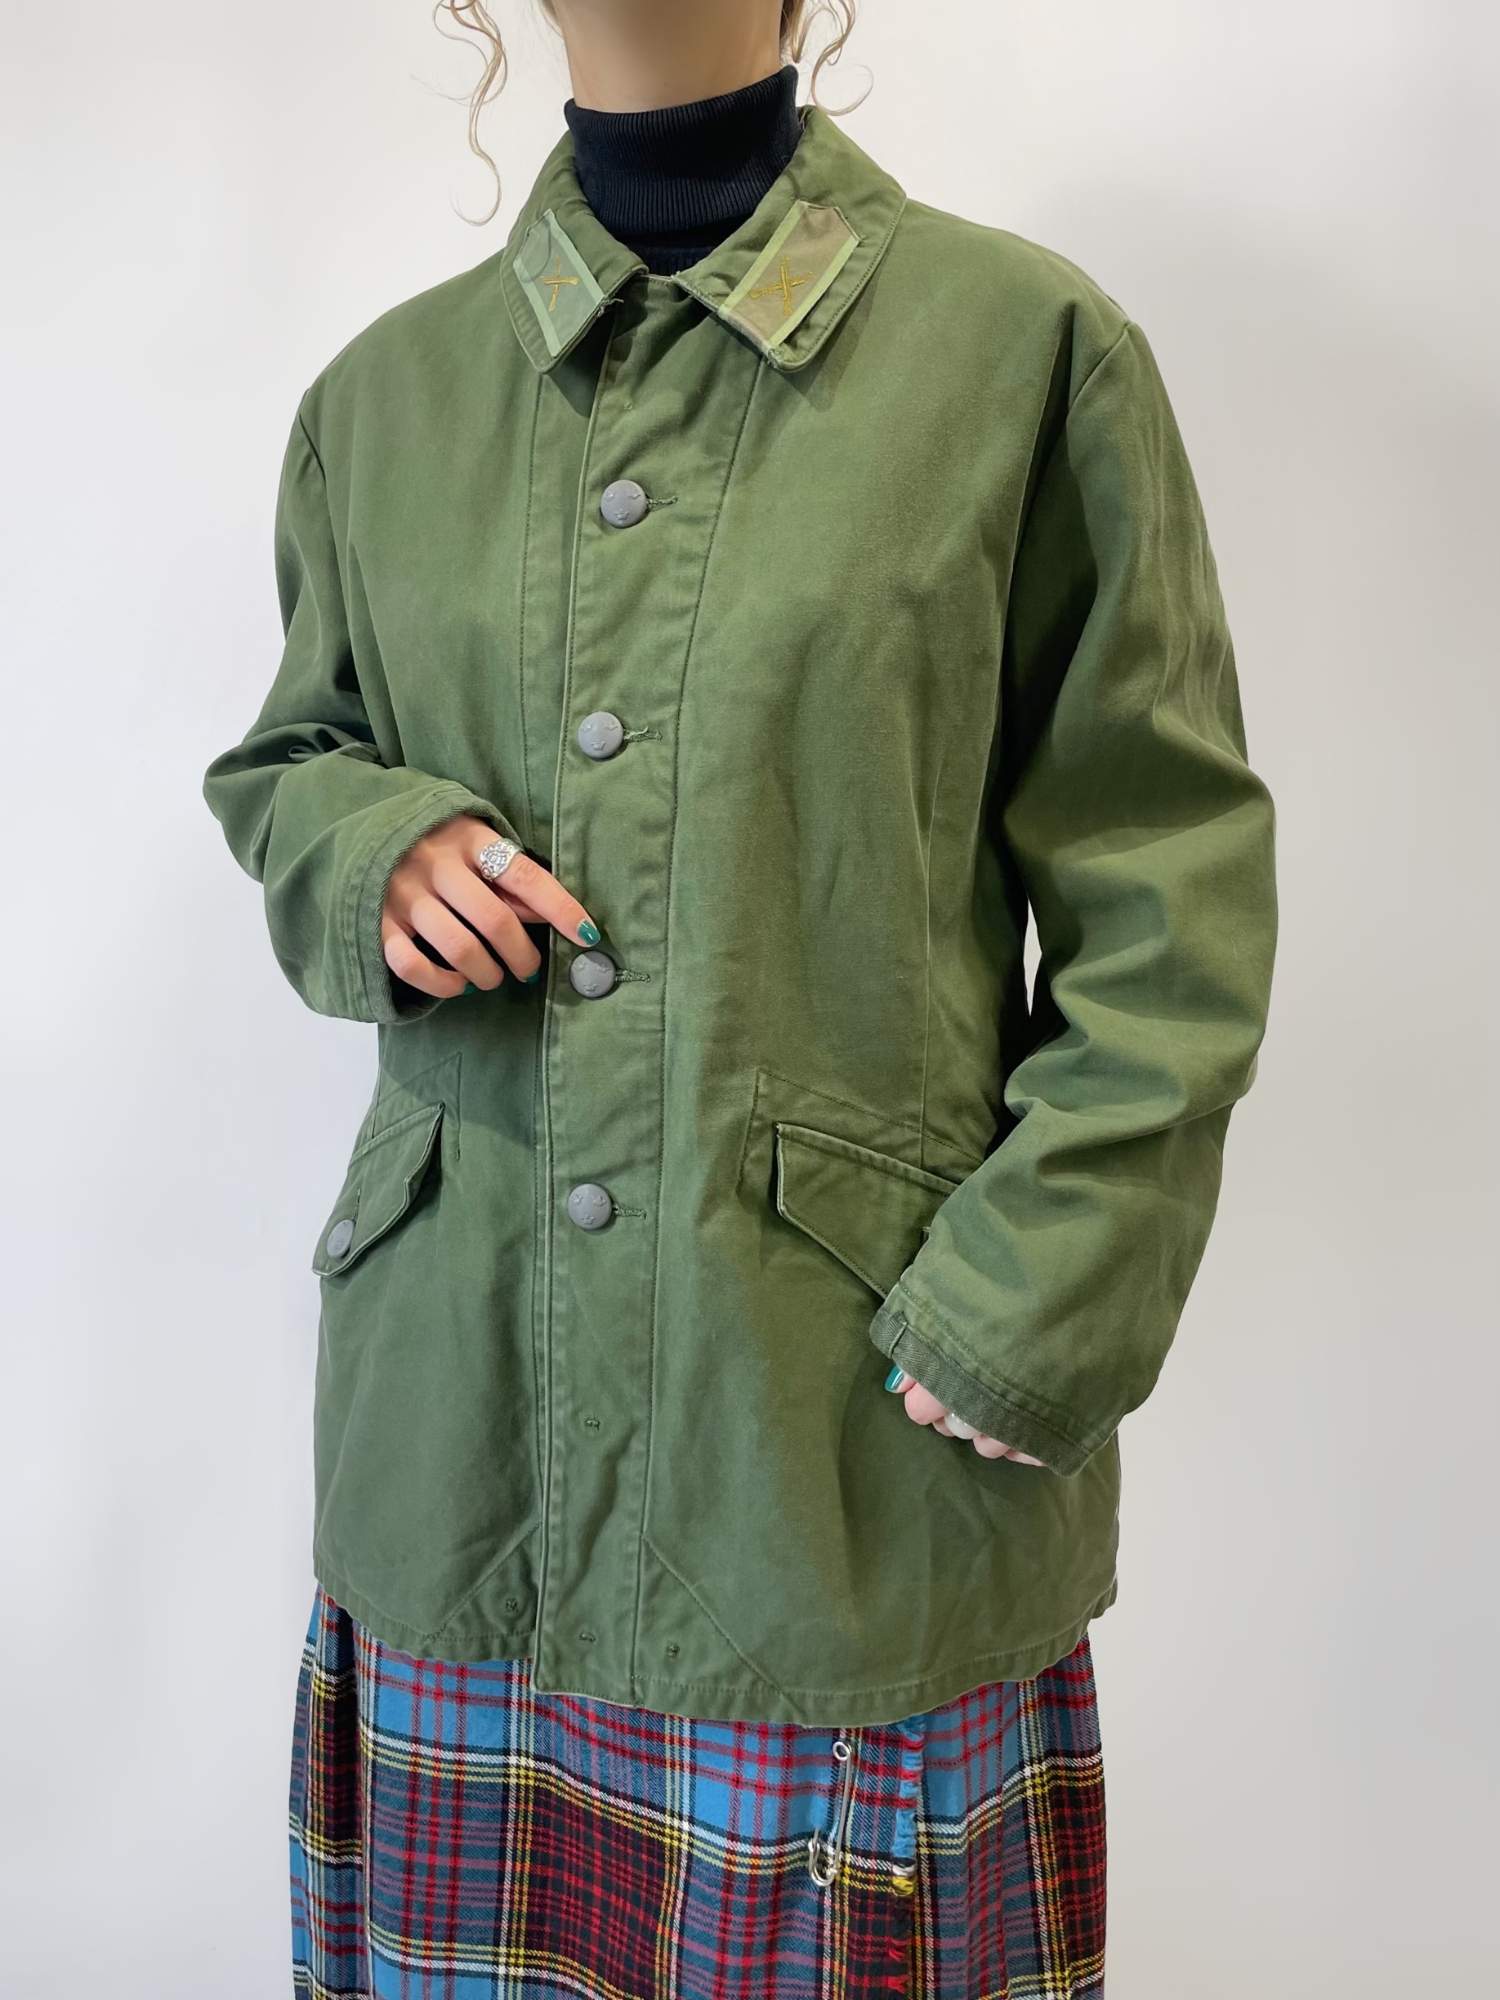 スウェーデン軍 m59 実物 フィールドジャケット 70s 緑 ミリタリー